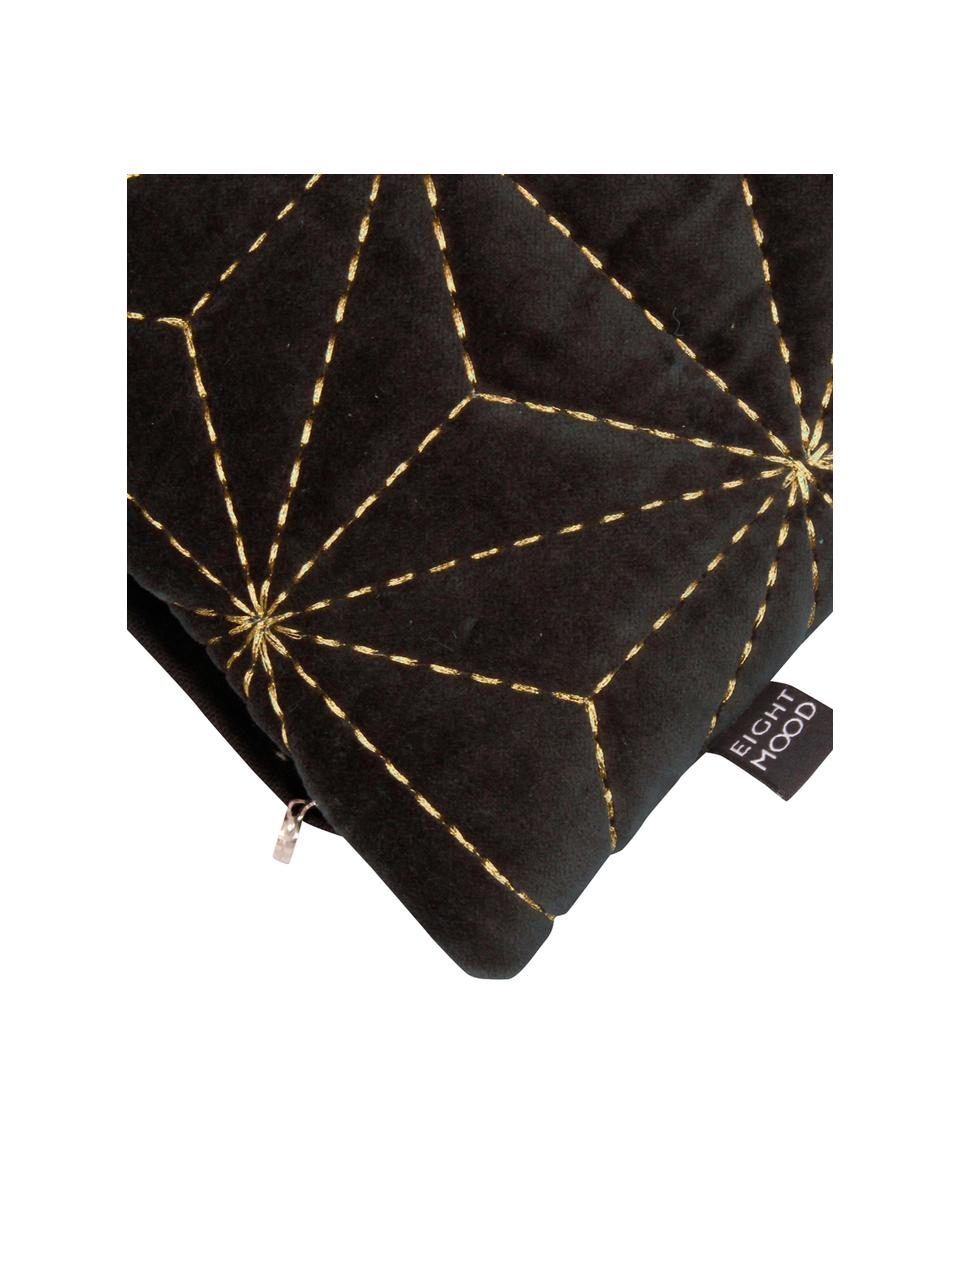 Kussenhoes Sari met gouden borduurwerk, 100% katoen, Zwart, goudkleurig, 45 x 45 cm